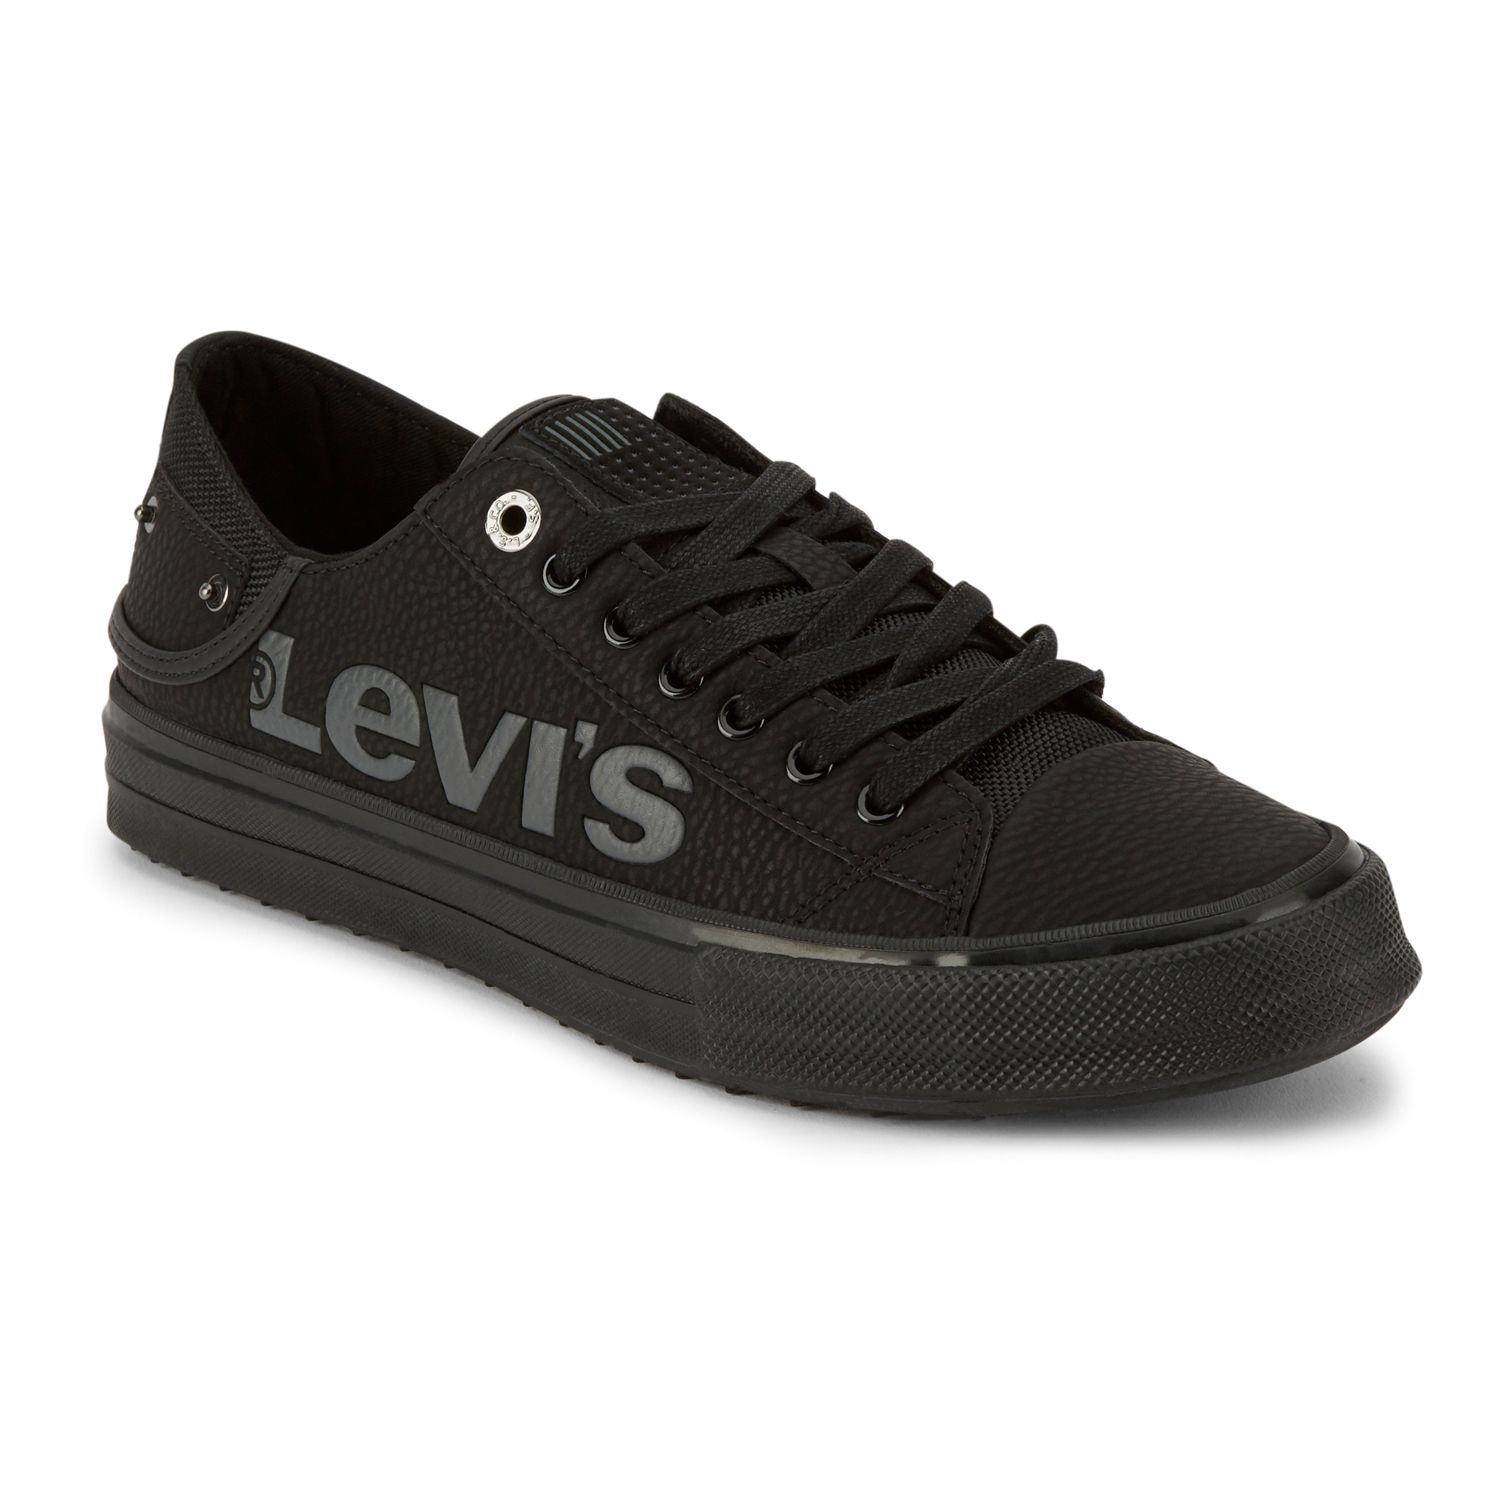 Levi's Comfort Shoes Black Best Sale, SAVE 32% 